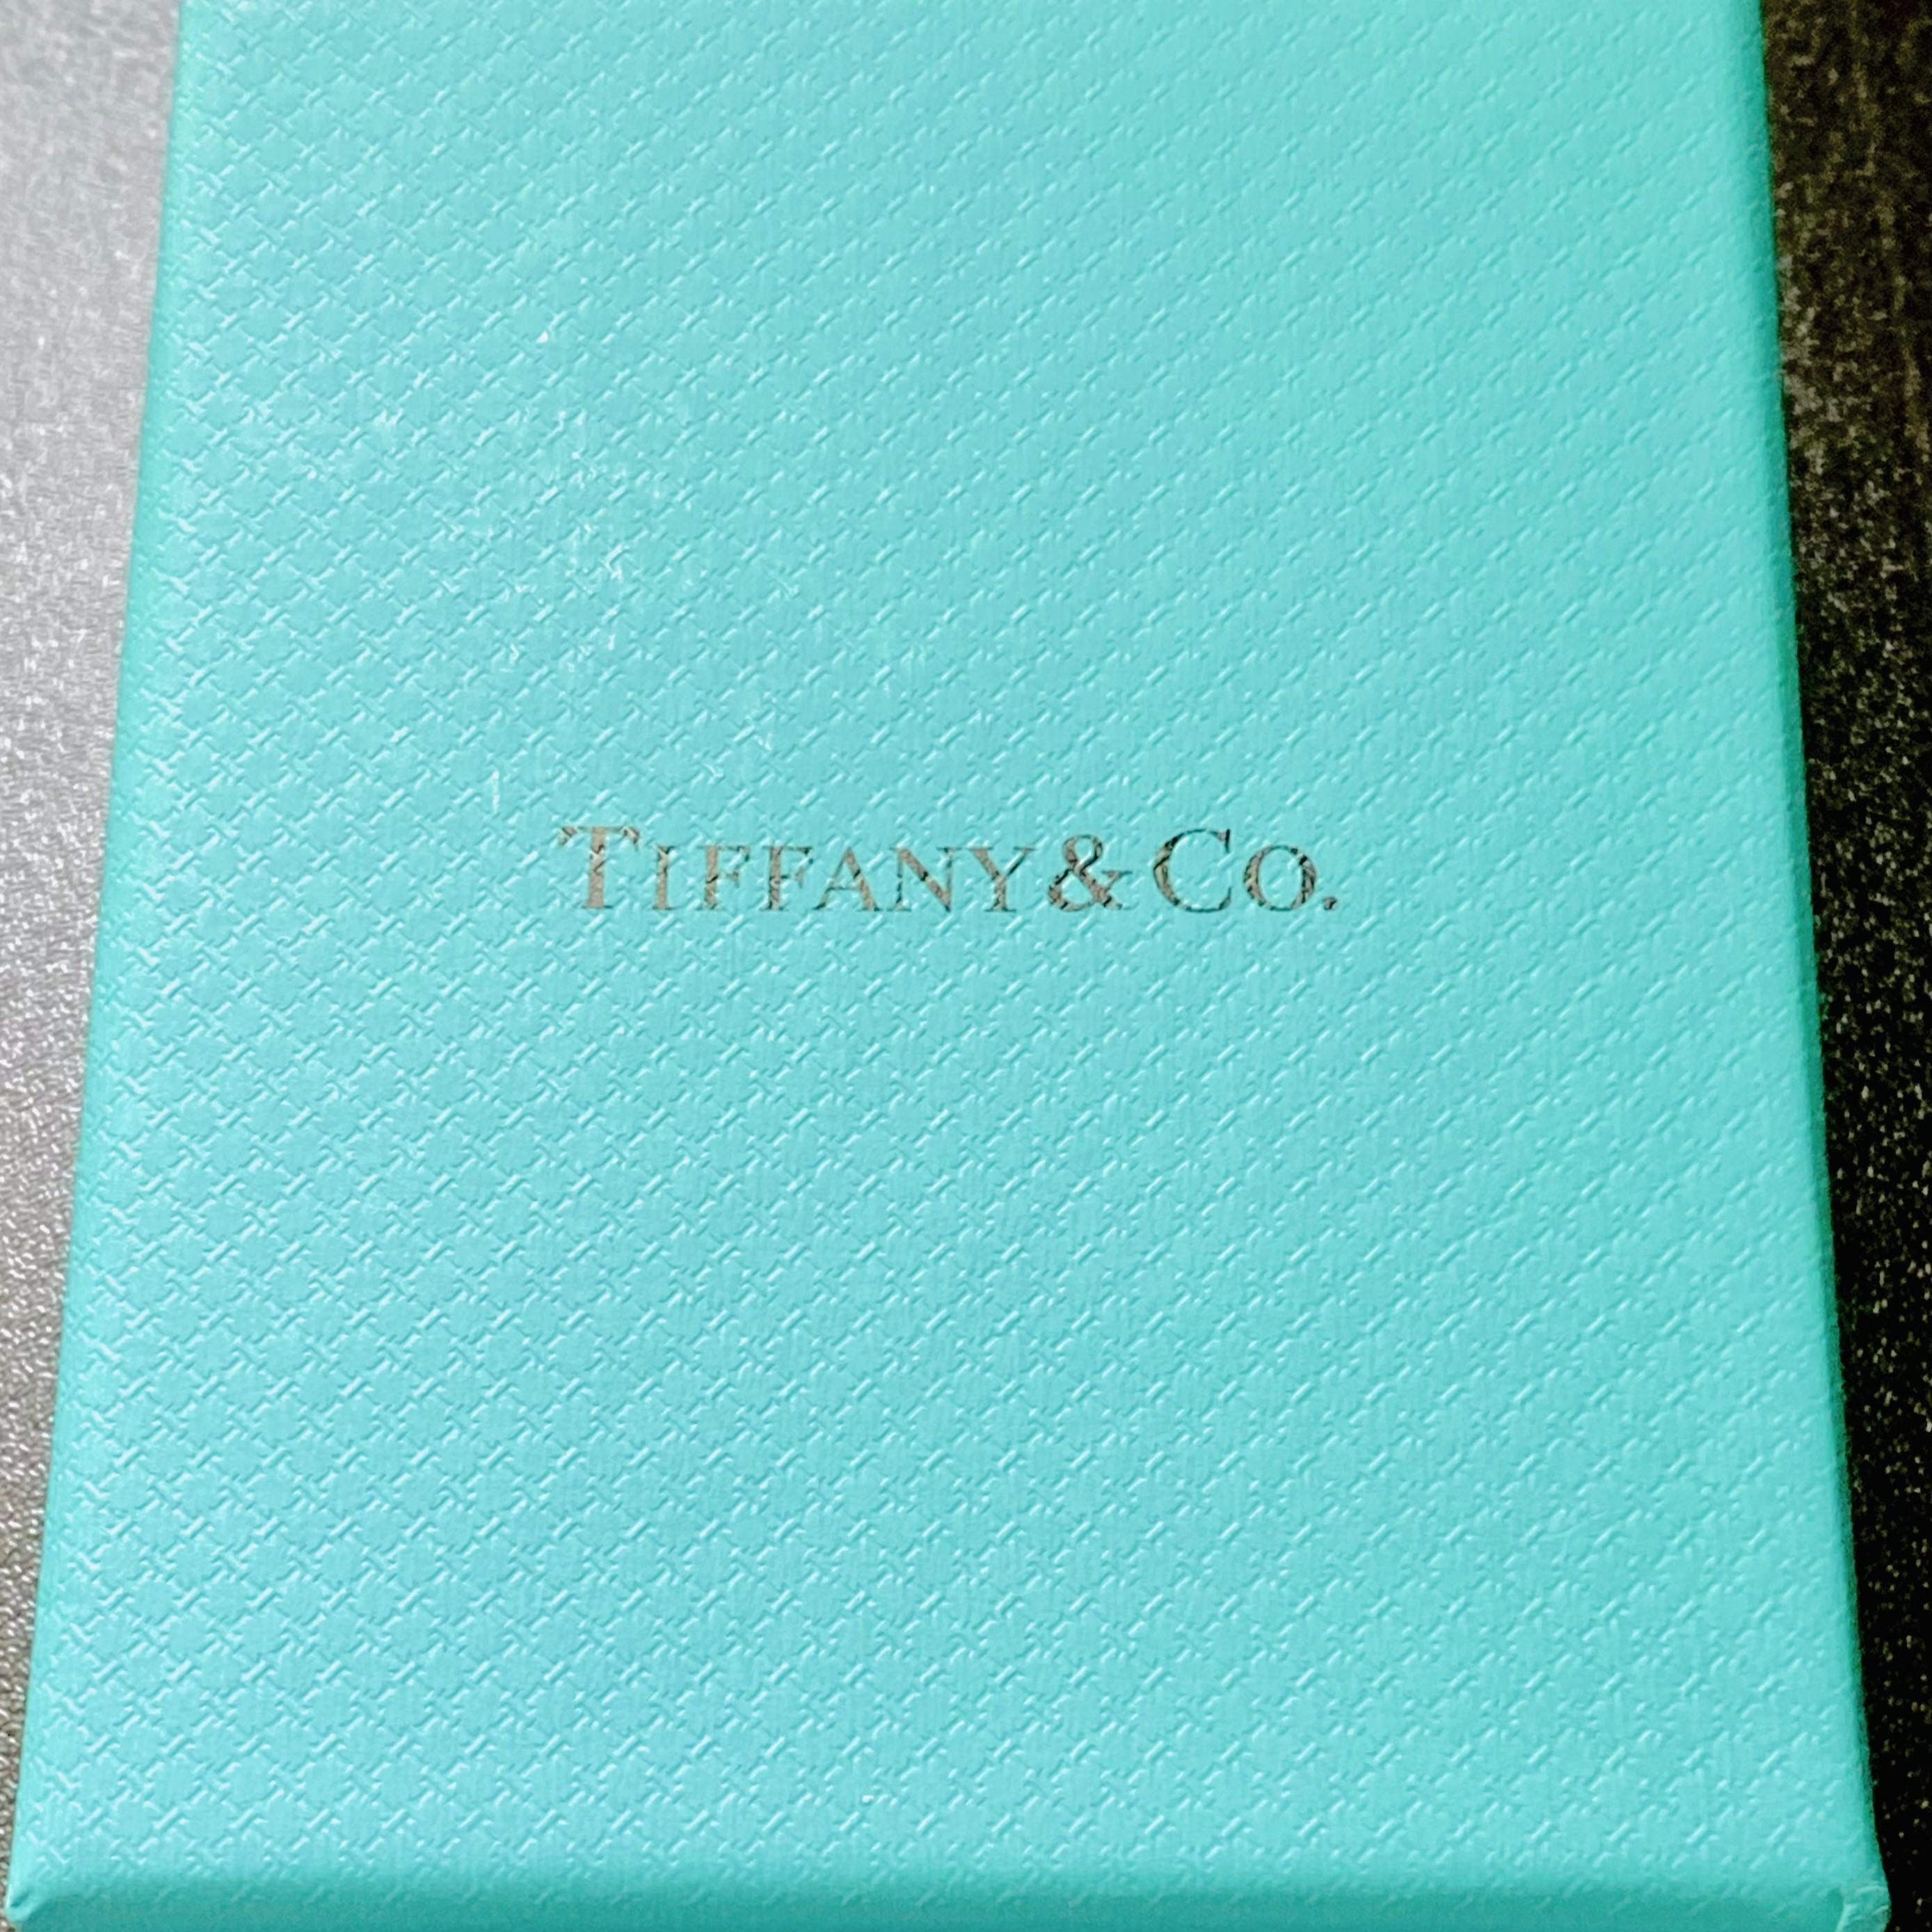 Der Inbegriff zeitloser Eleganz: die Tiffany & Co. 18k Gold Pearl Bow Brooch Pin. Das aus 18-karätigem Gold gefertigte Schmuckstück verkörpert Raffinesse und Luxus.
In seiner Mitte, eingebettet in das zarte Schleifendesign, ruht eine schimmernde